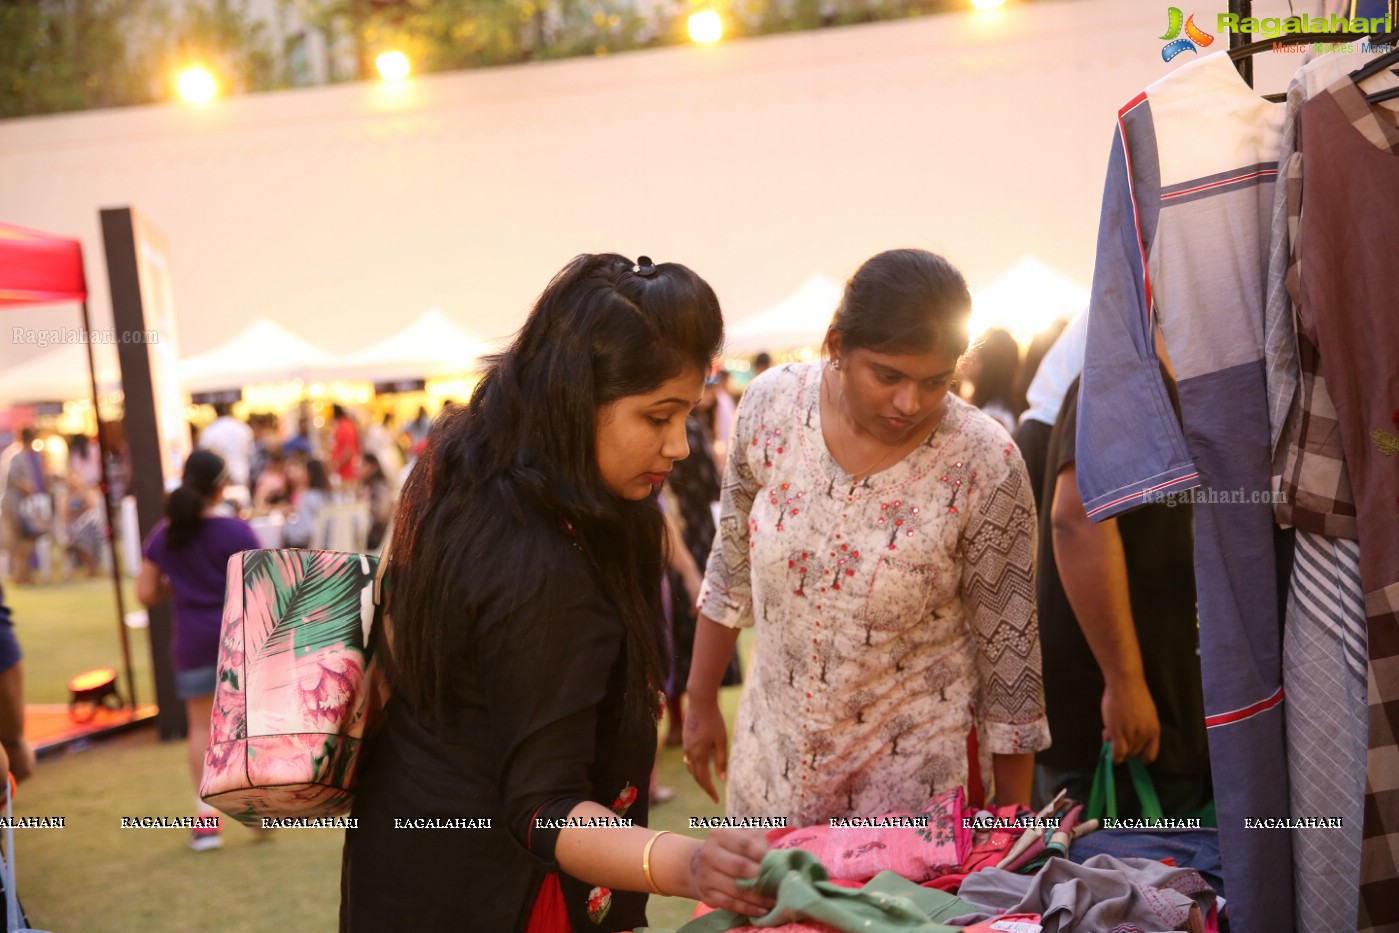 SteppinOut Night Market (April 2018) at Taj Krishna